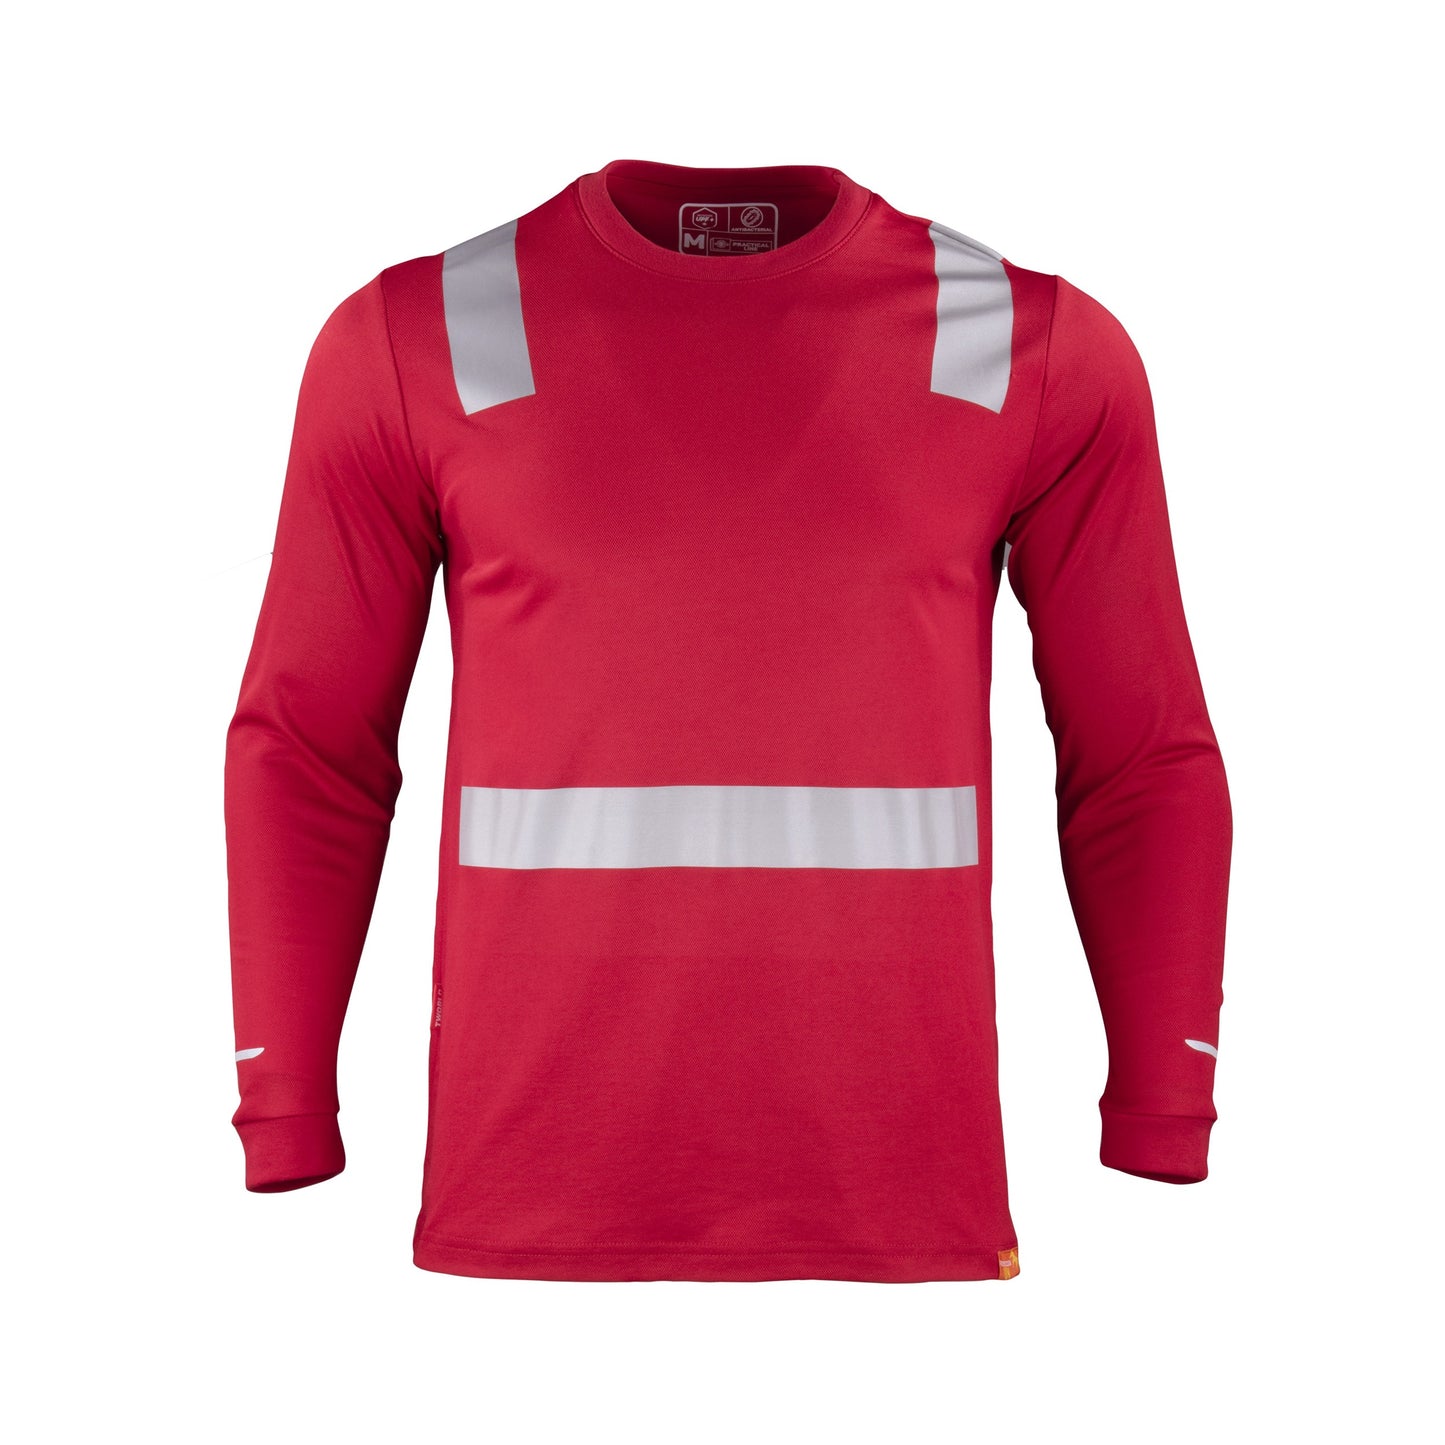 Polera roja frente de manga larga con cinta reflectante, diseñada para seguridad y visibilidad en el trabajo